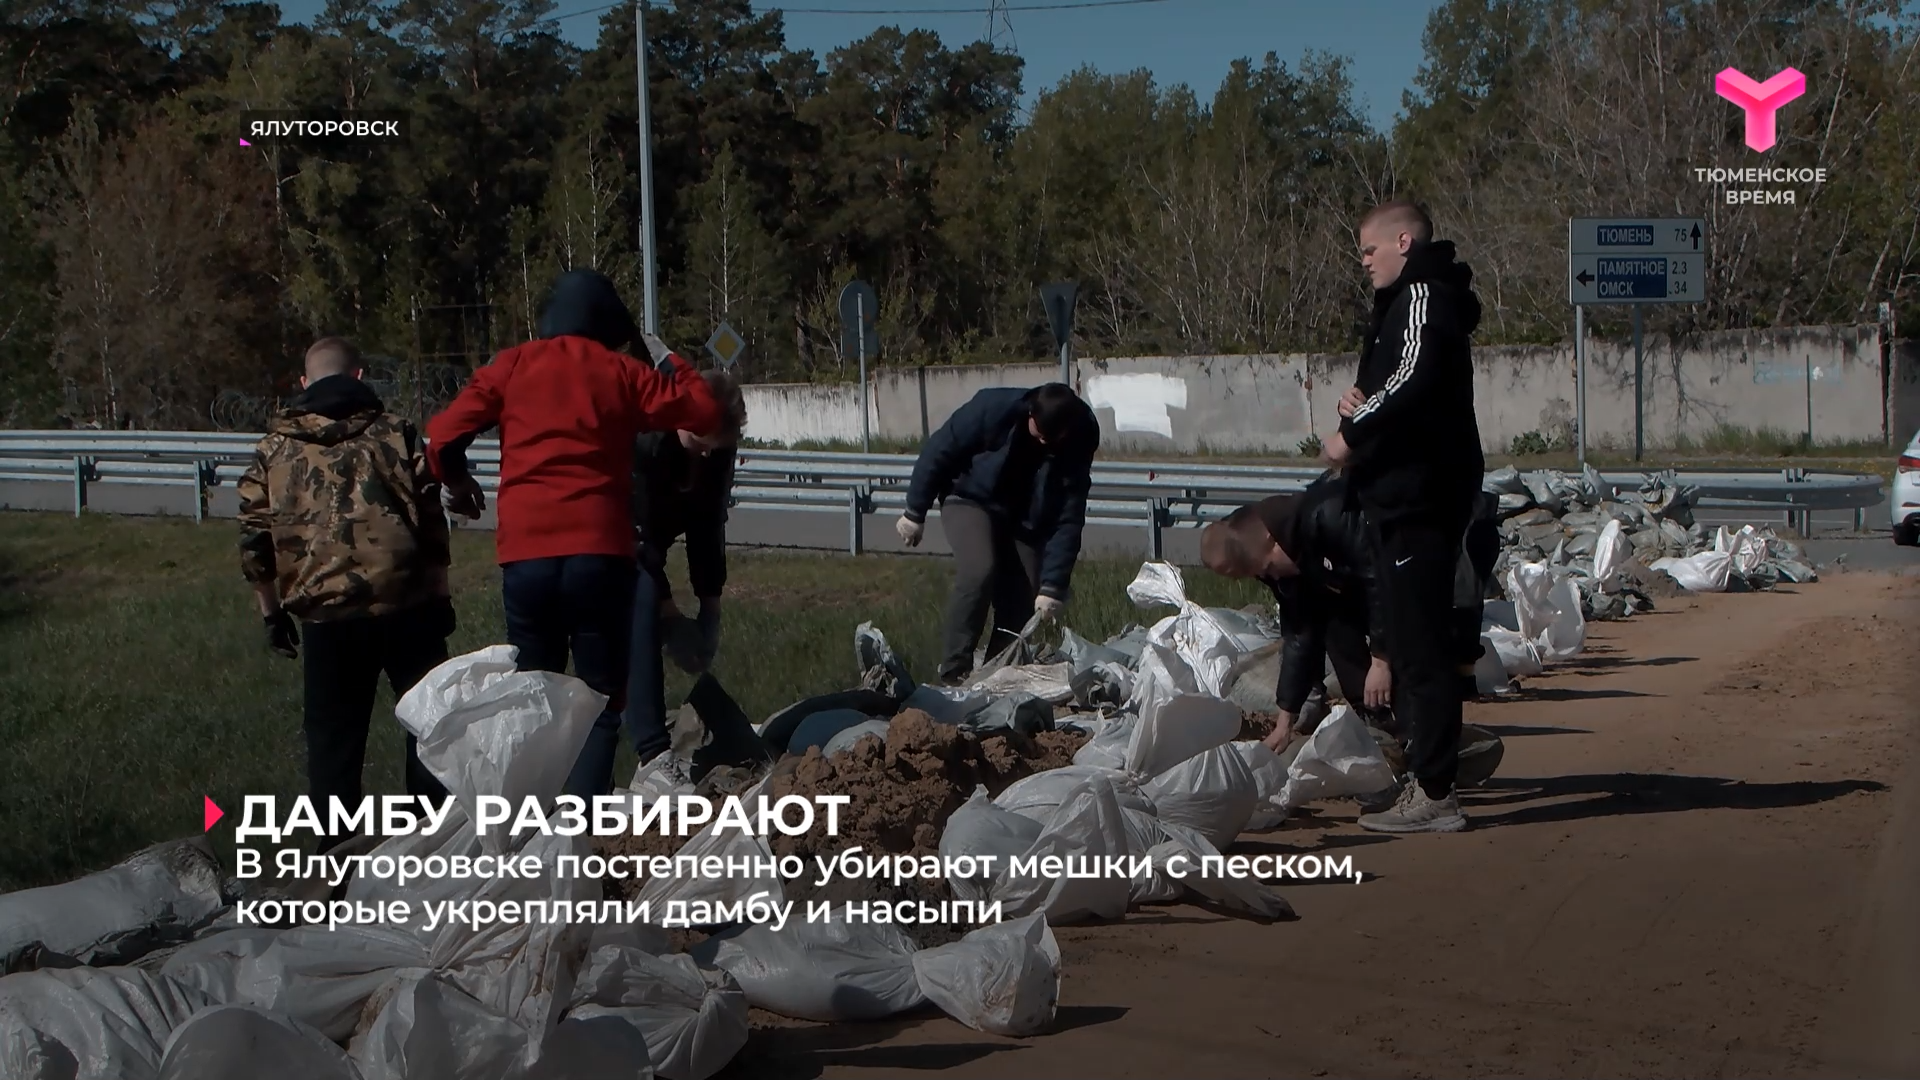 В Ялуторовске постепенно убирают мешки с песком, которые укрепляли дамбу и насыпи